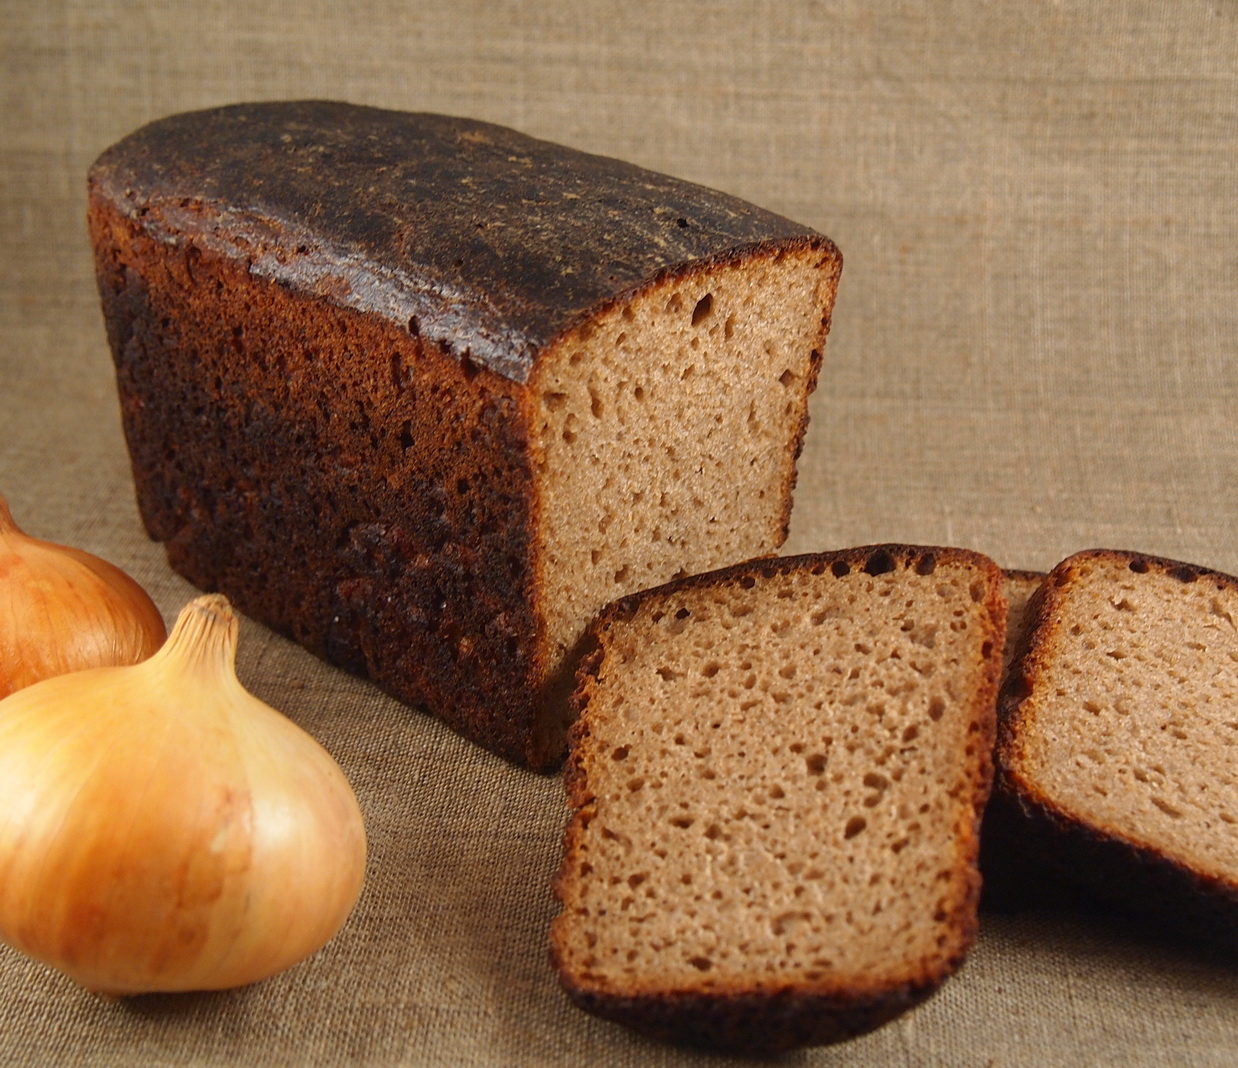 Пряный хлеб. Черный хлеб. Хлеб в печи. Ржаной хлеб. Ржаной хлеб в русской печи.